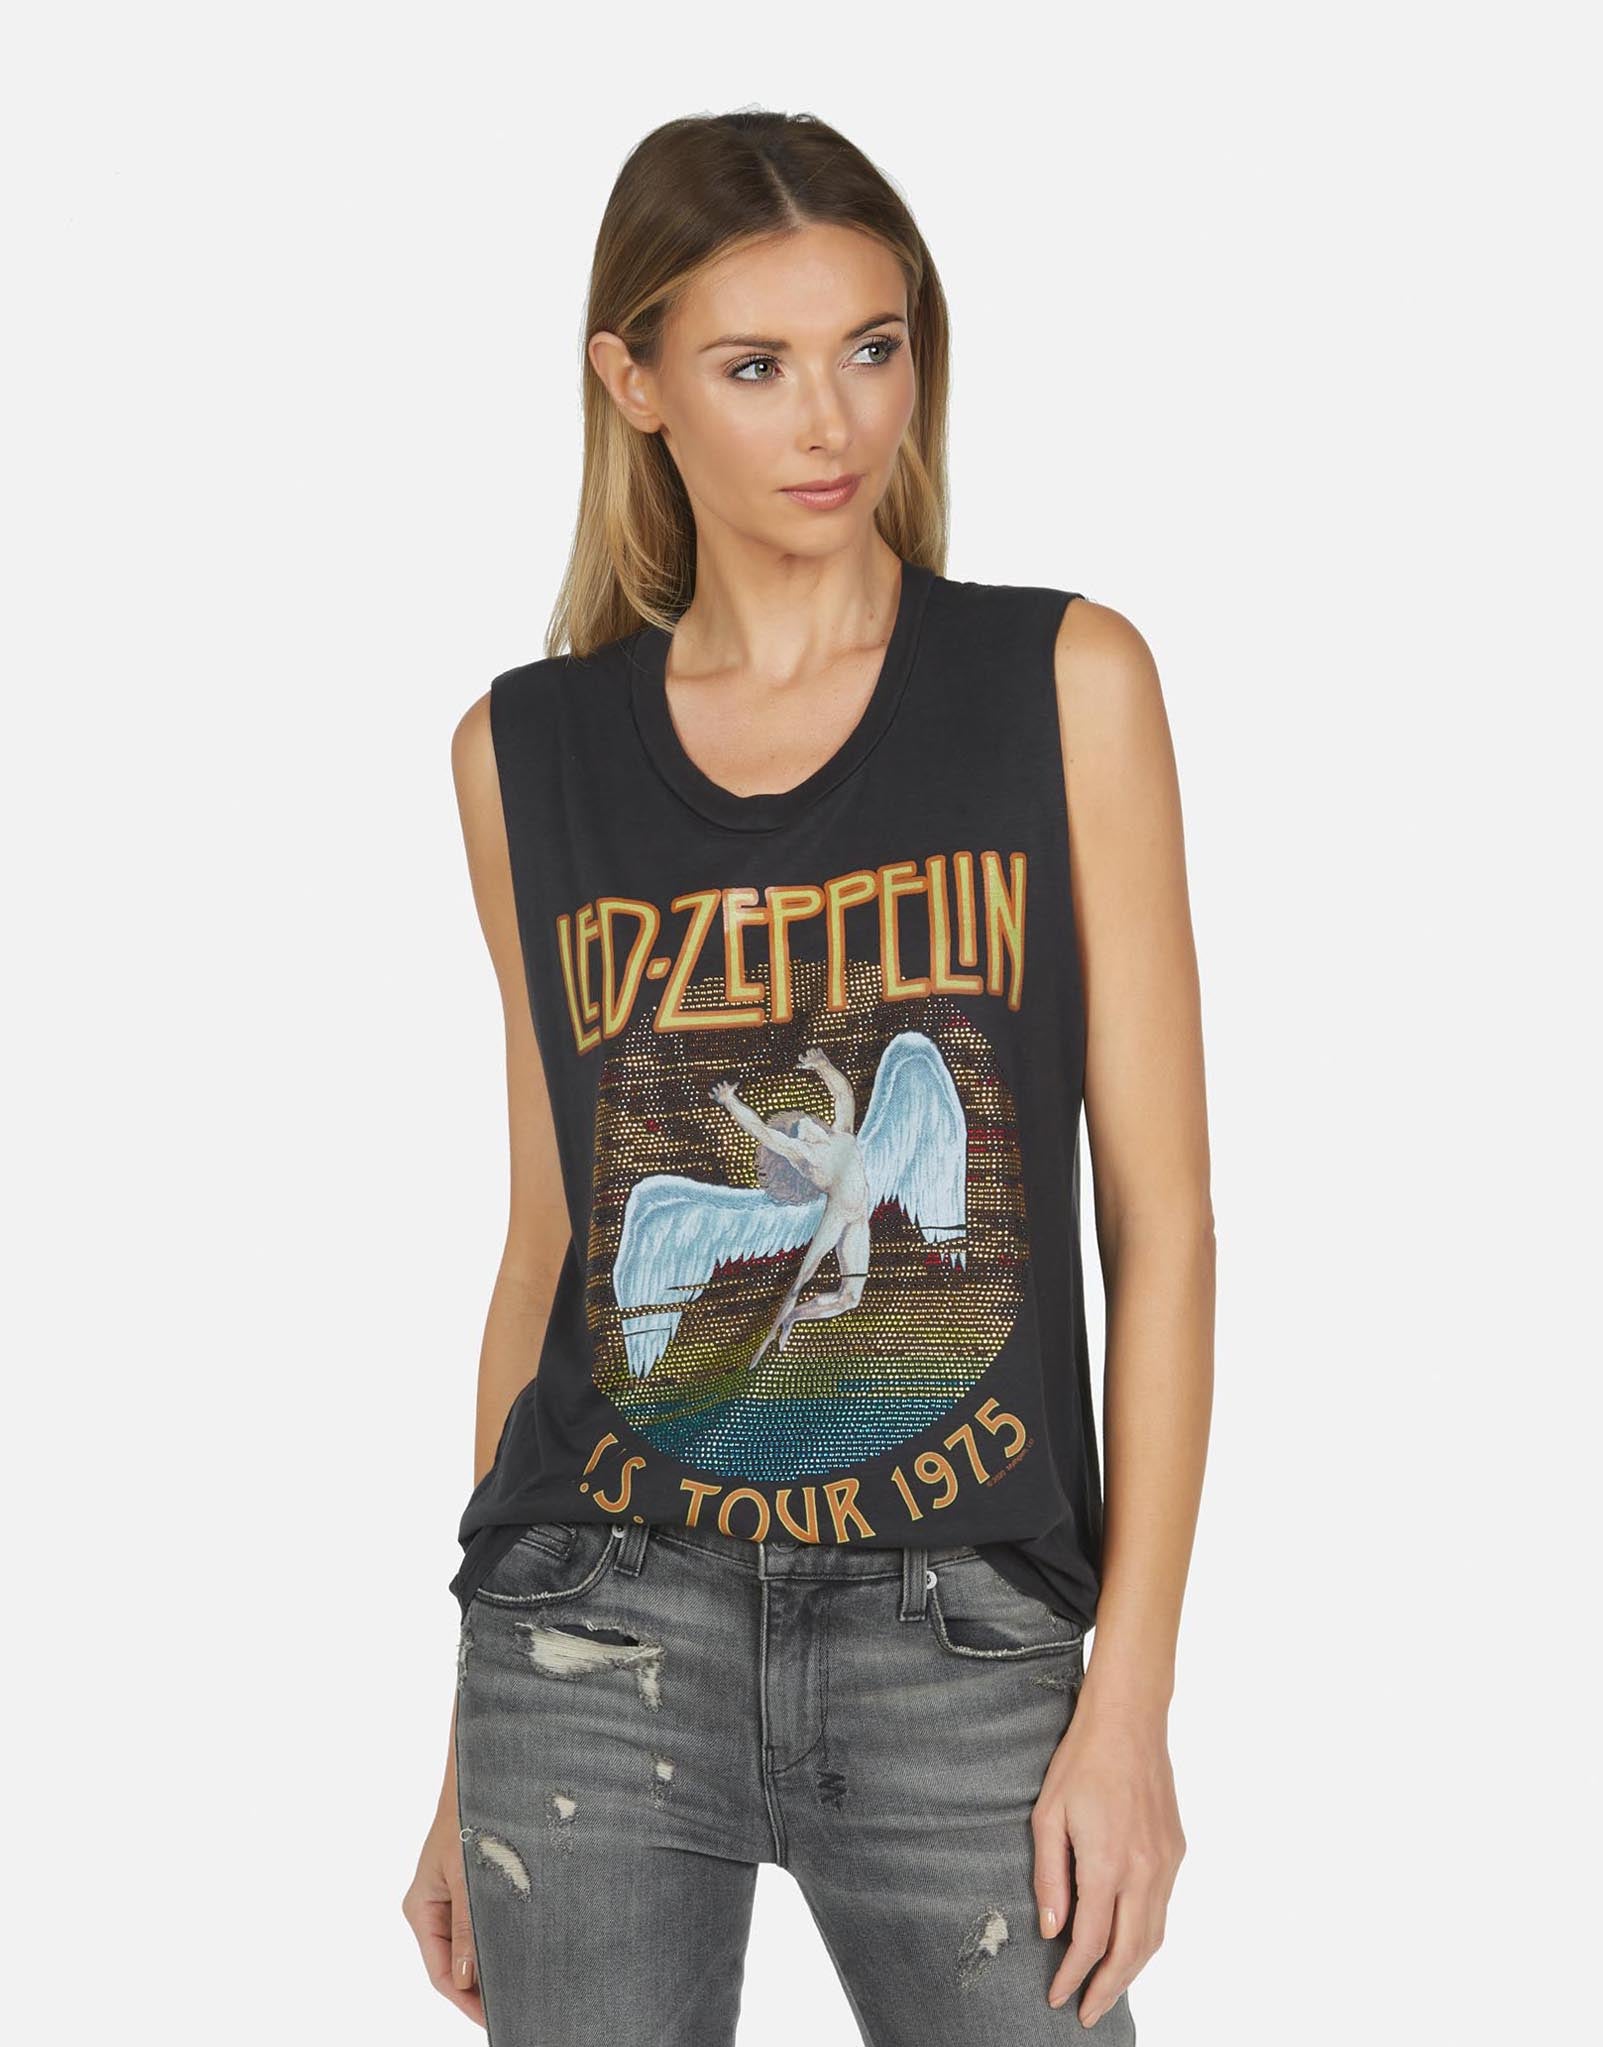 Kel Led Zeppelin